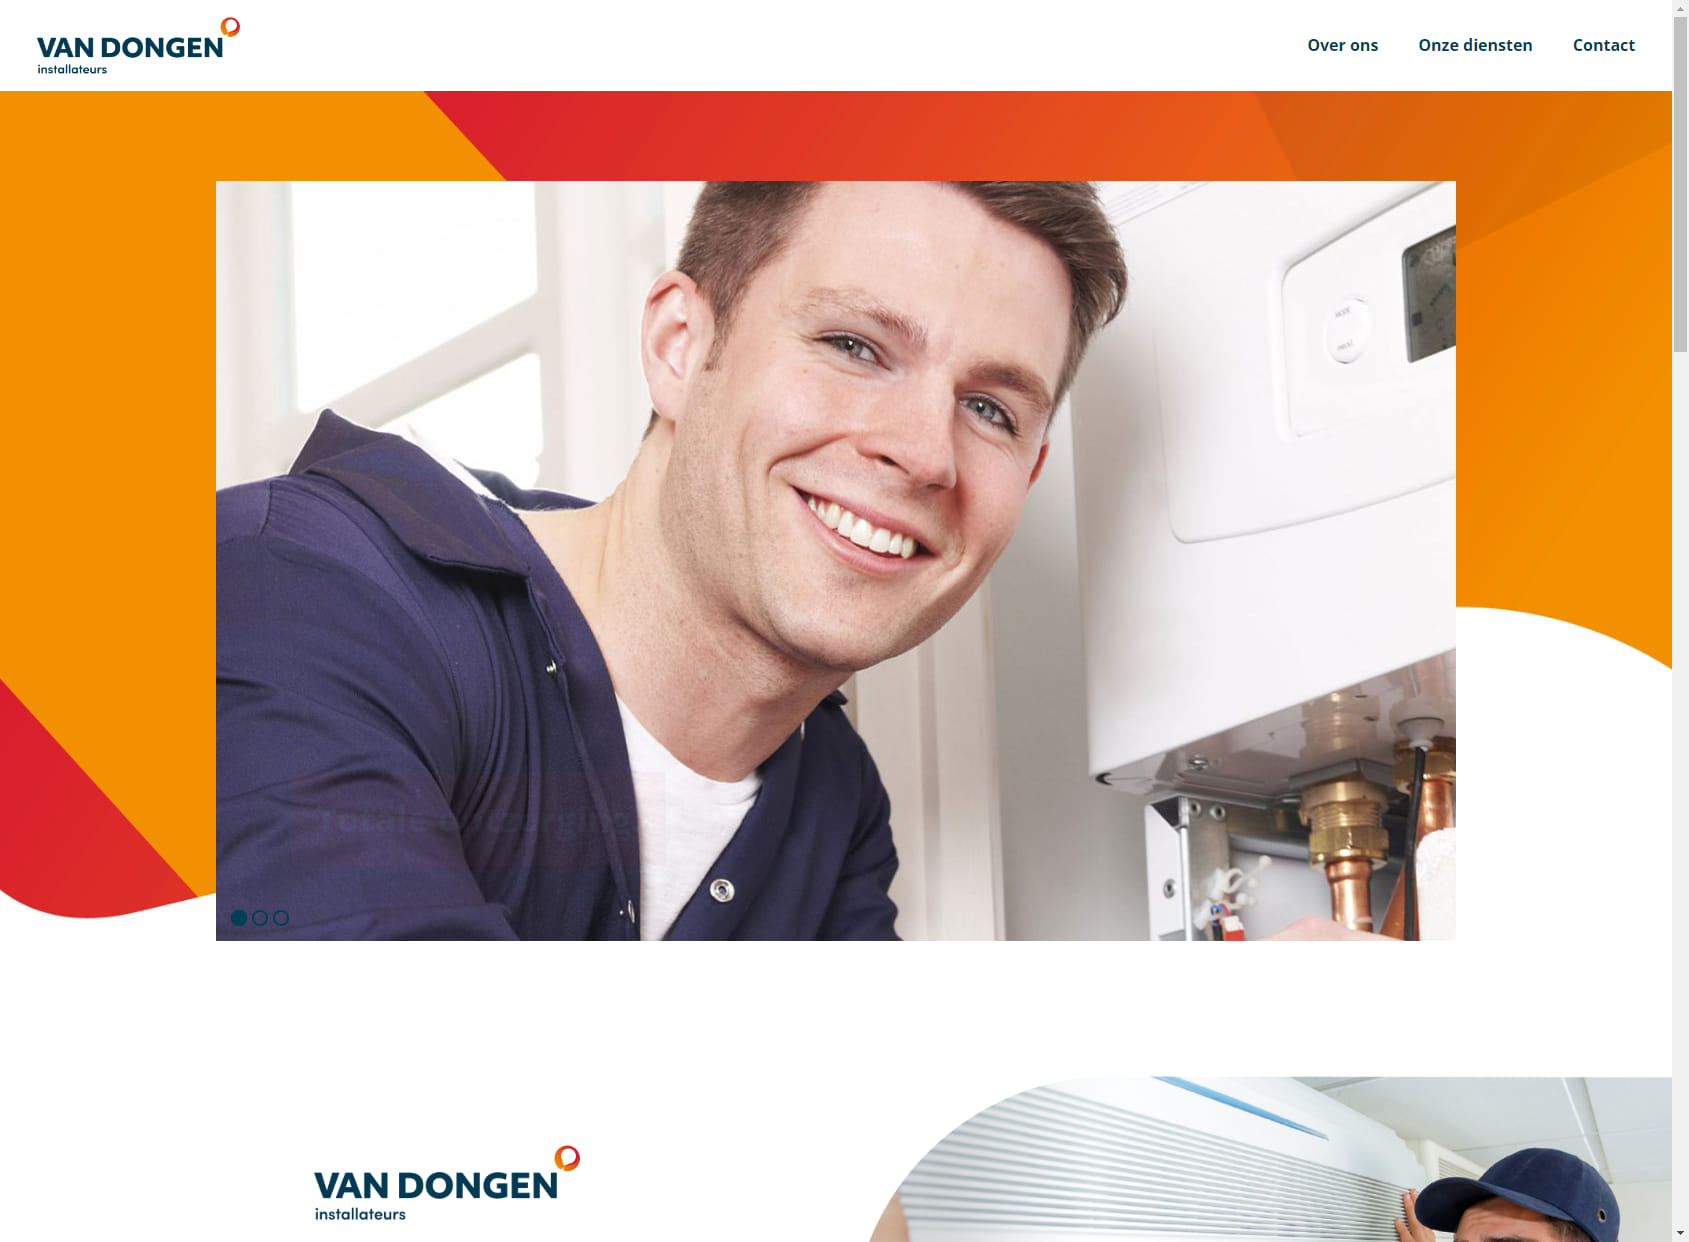 Installation and plumbing company Van Dongen